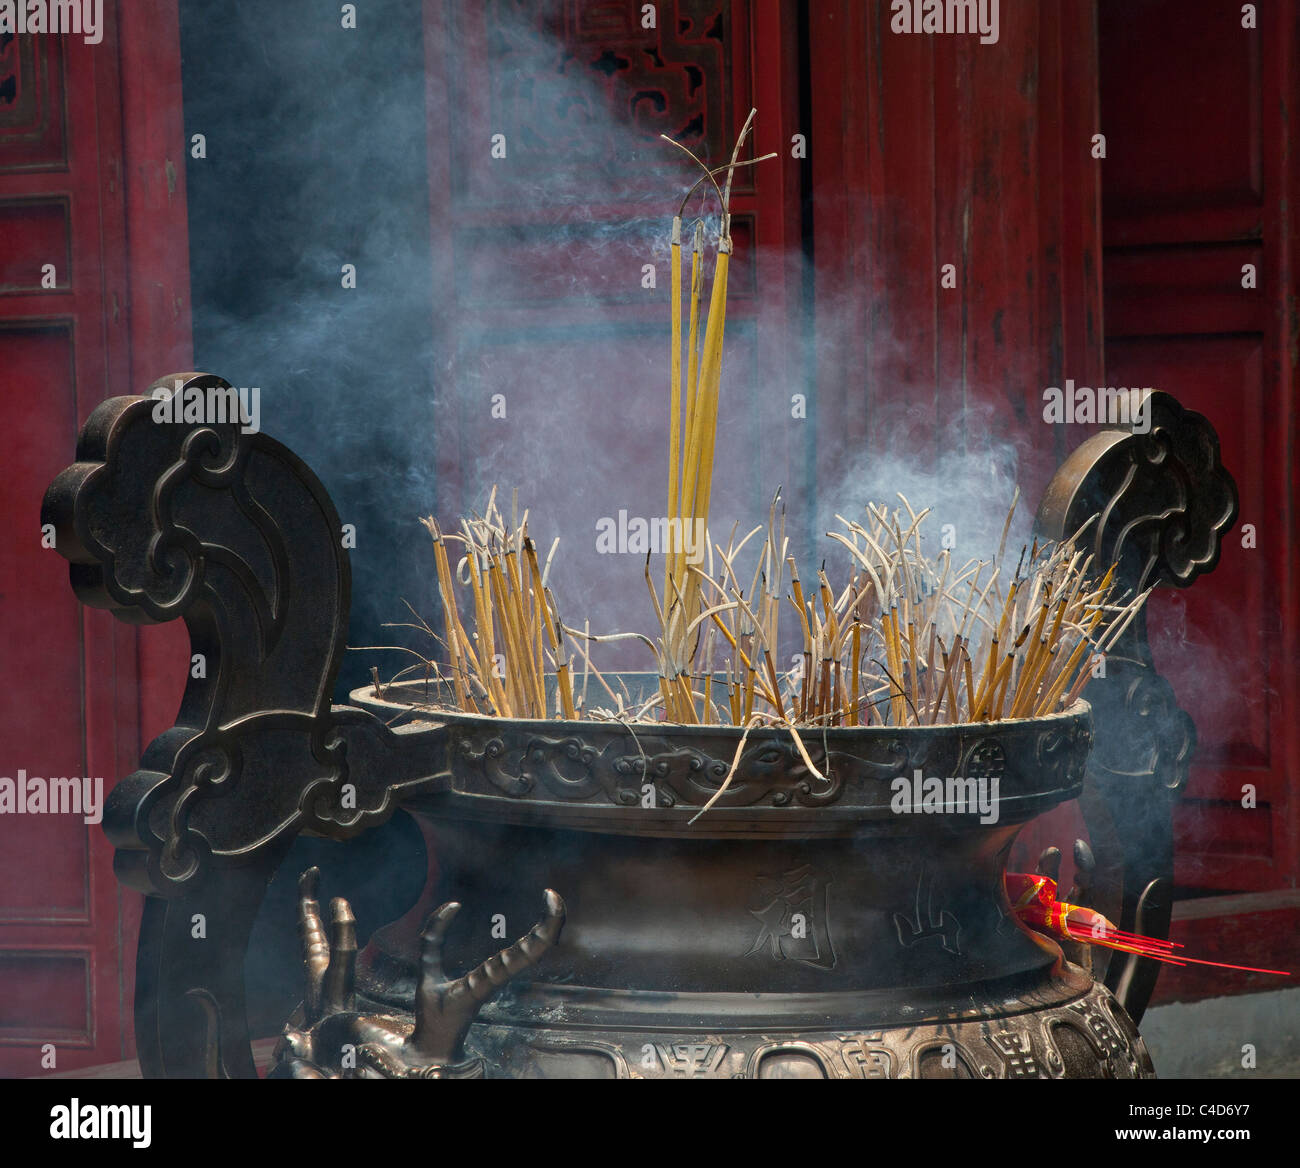 Joss combustion d'encens à l'entrée d'un temple bouddhiste, Vietnam Banque D'Images